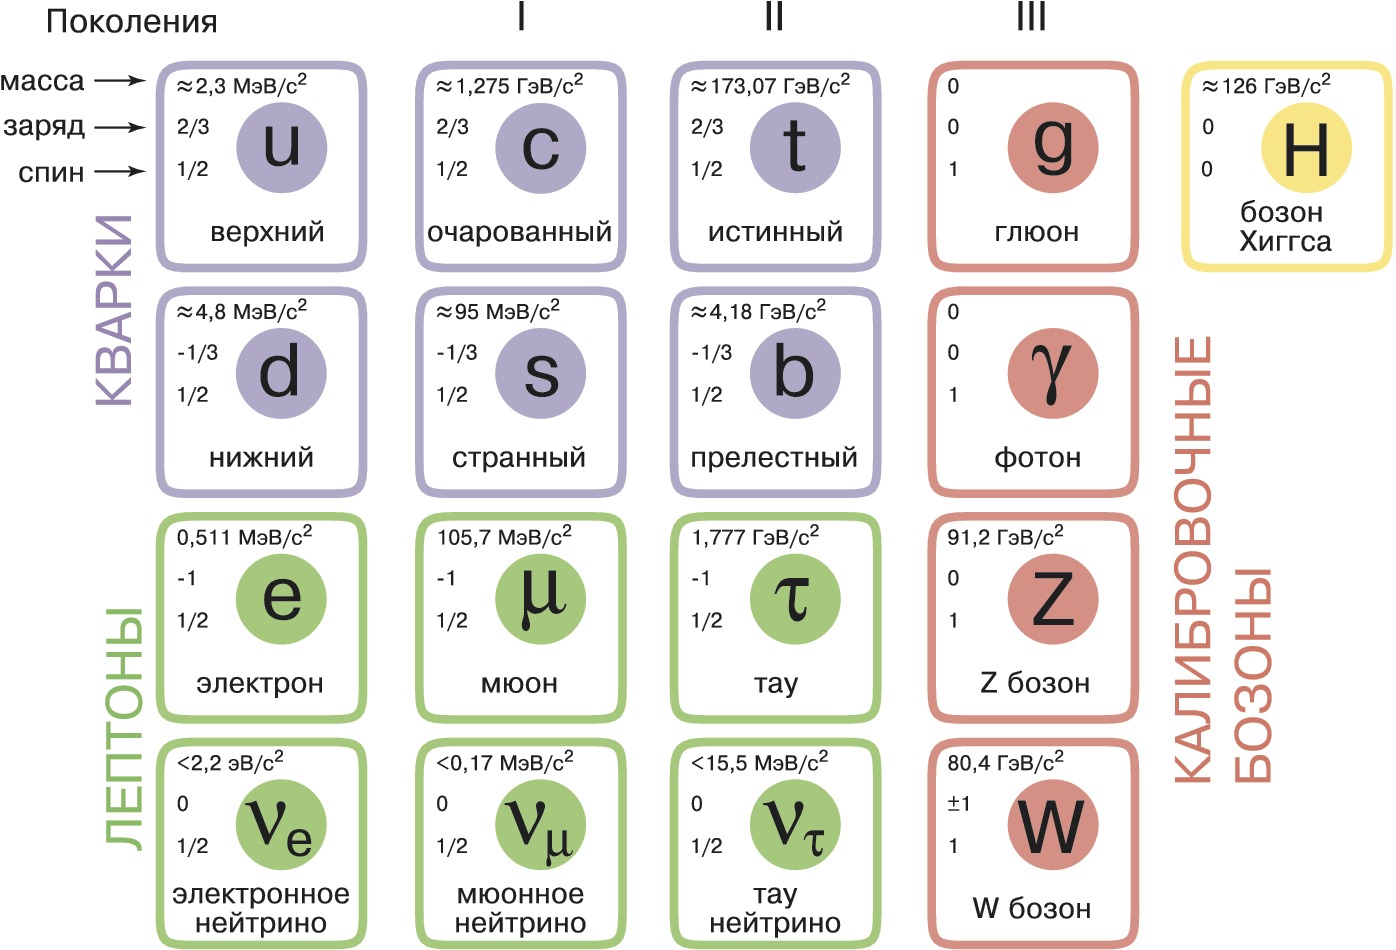 Связанная система элементарных частиц содержит 25 электронов